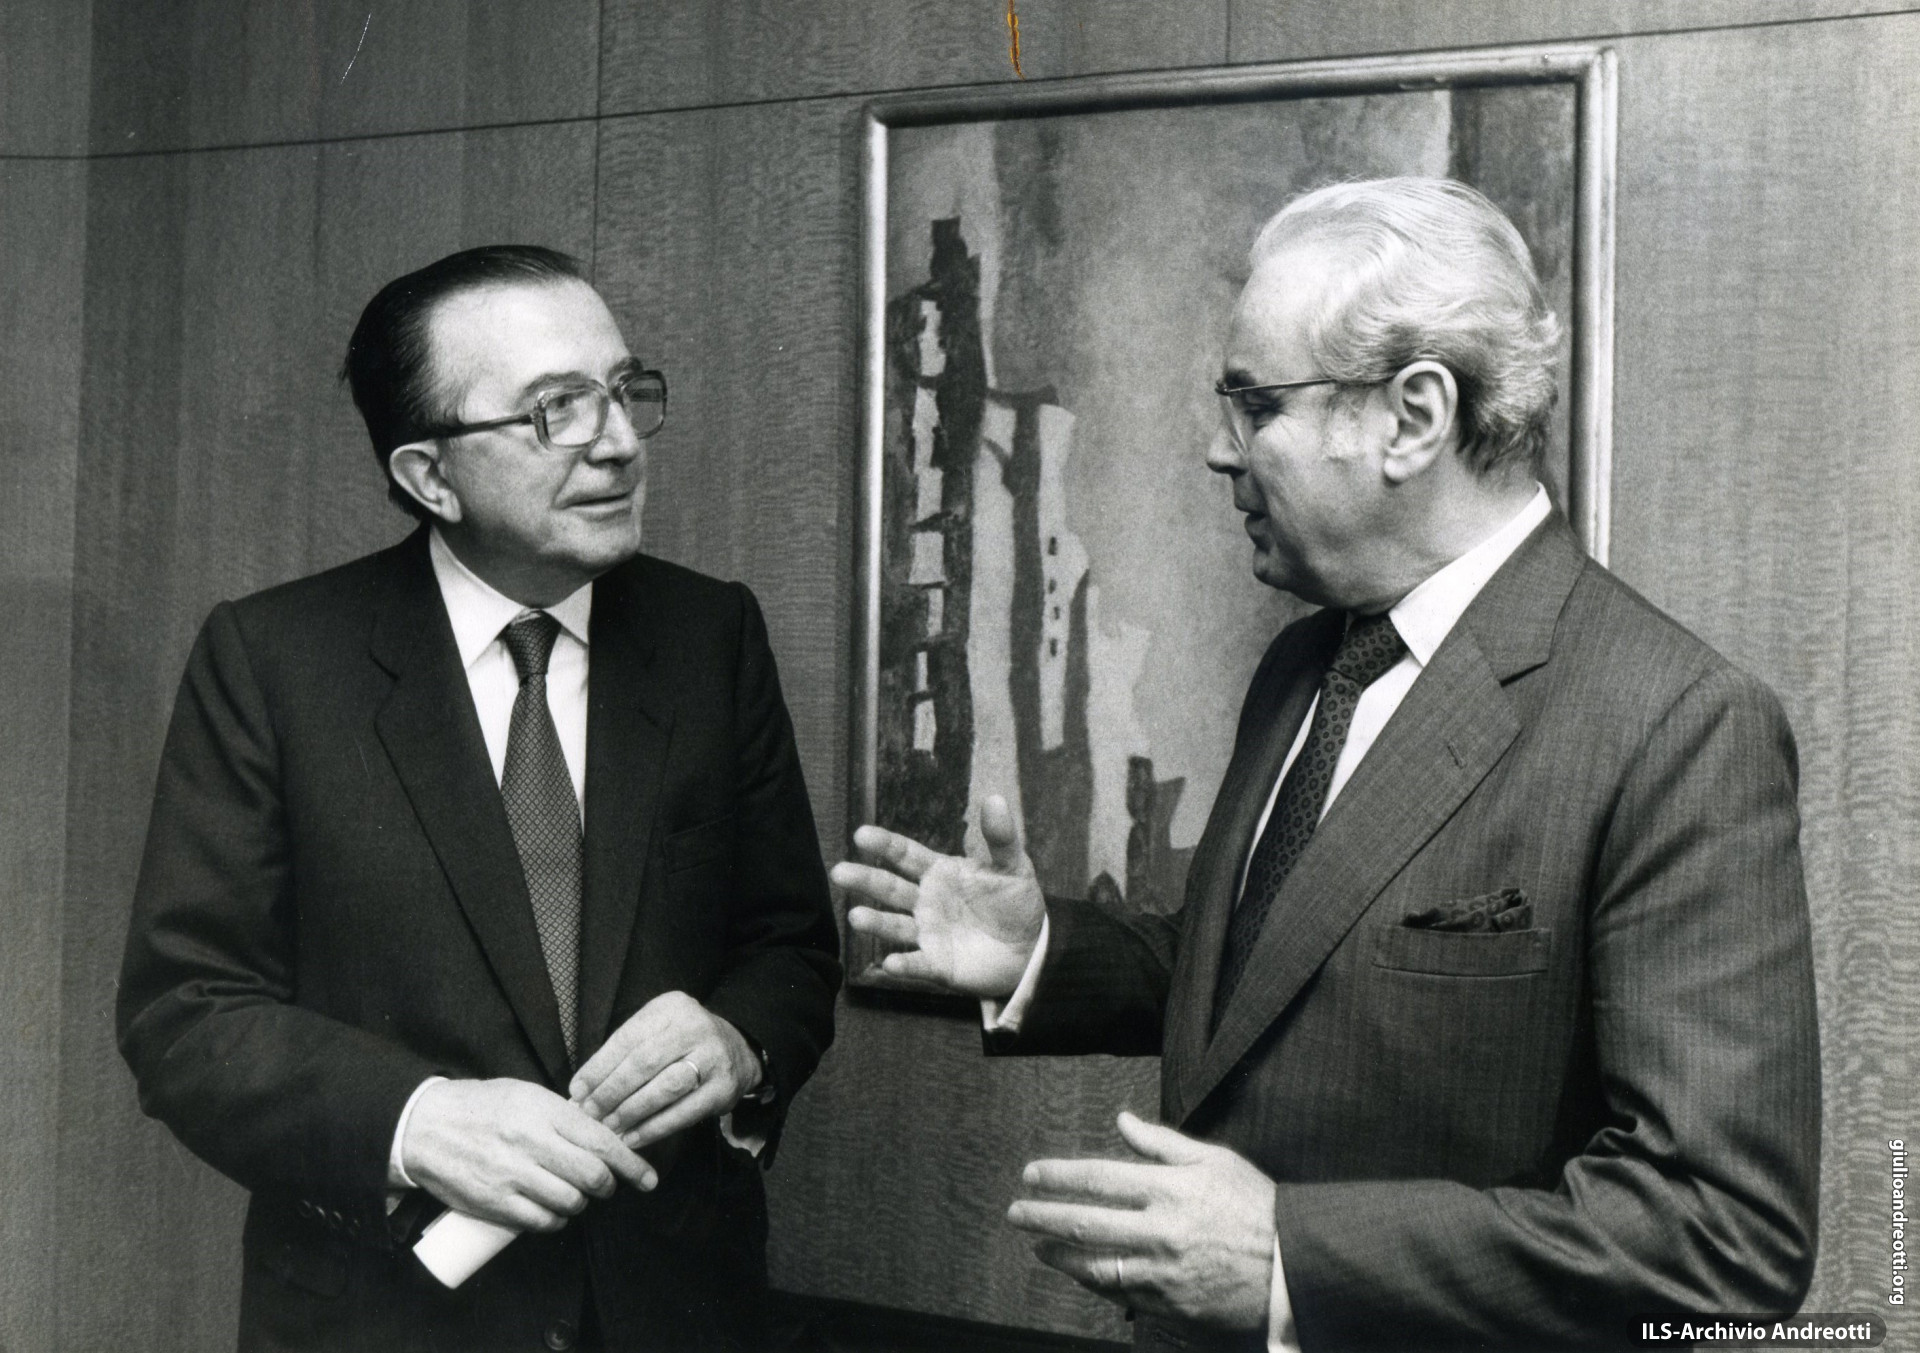 New York. Il 24 settembre 1985 Andreotti incontra il Segretario generale dell'ONU, Javier Perez de Cuellar, durante i lavori dell'Assemblea Generale.